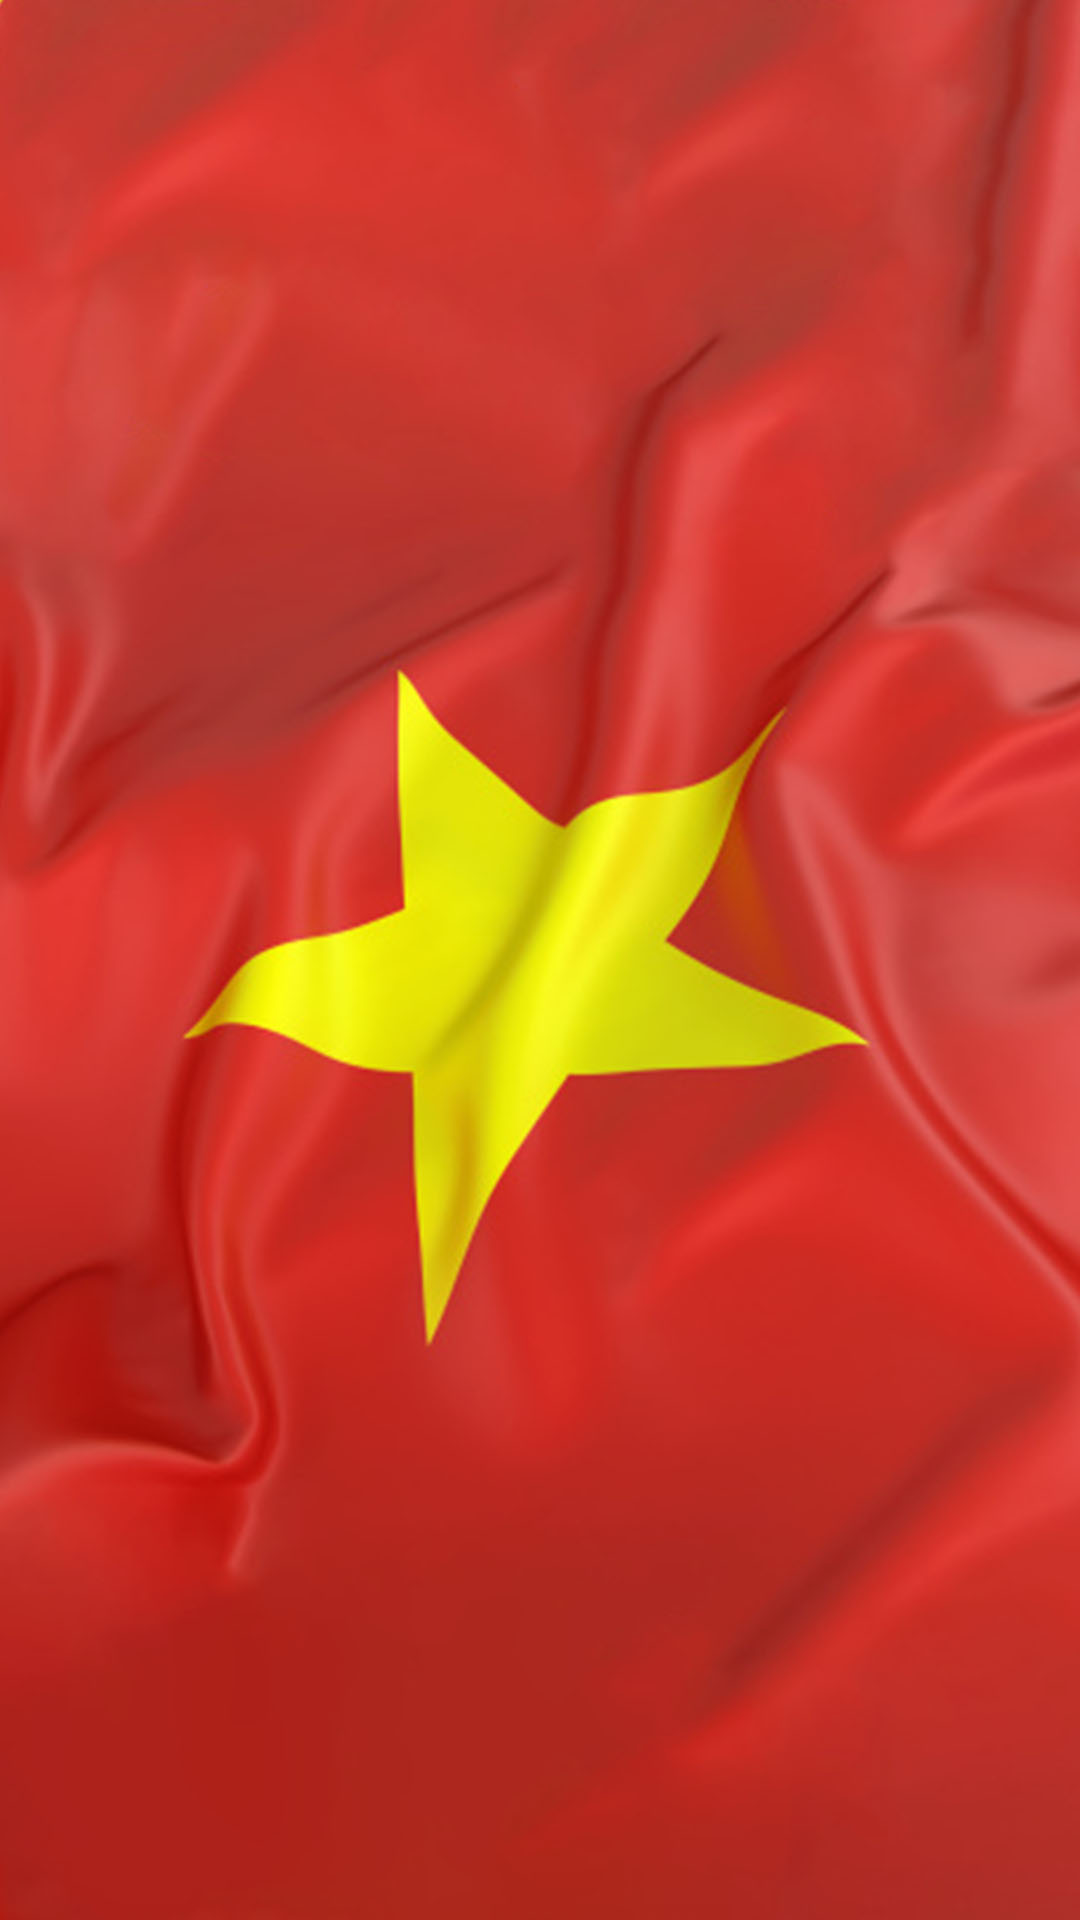 250+ Hình Nền Cờ Việt Nam 2024:
Đừng bỏ lỡ cơ hội có được bộ sưu tập hình nền Cờ Việt Nam 2024 với hơn 250 tùy chọn đẹp mắt! Bộ sưu tập này bao gồm những hình ảnh chất lượng cao, cực kỳ đa dạng và được thiết kế bởi những chuyên gia hàng đầu trong ngành. Hãy tăng thêm niềm kiêu hãnh với các biểu tượng quốc gia của chúng ta cùng bộ sưu tập 250+ hình nền Cờ Việt Nam 2024!